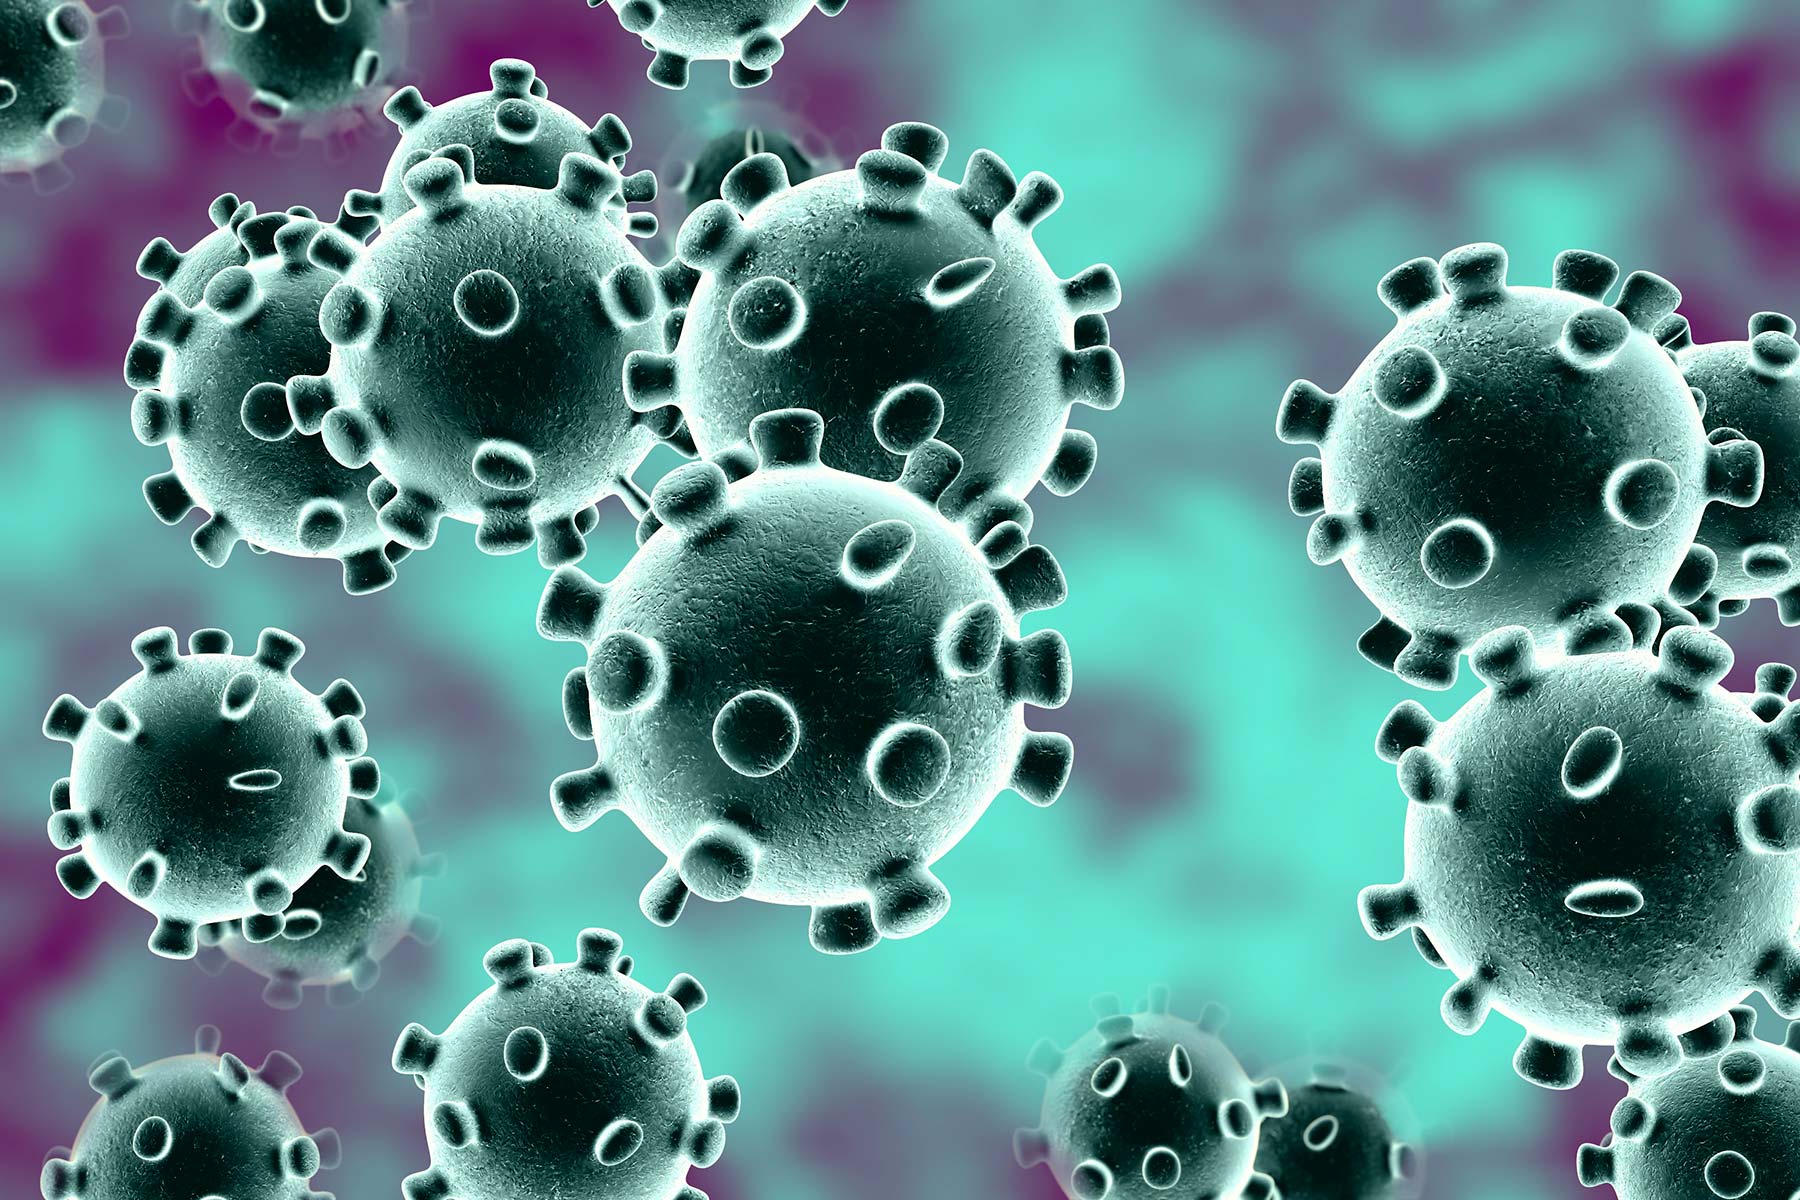 Steunmaatregelen tijdens het coronavirus: wat betekent dit voor uw organisatie?